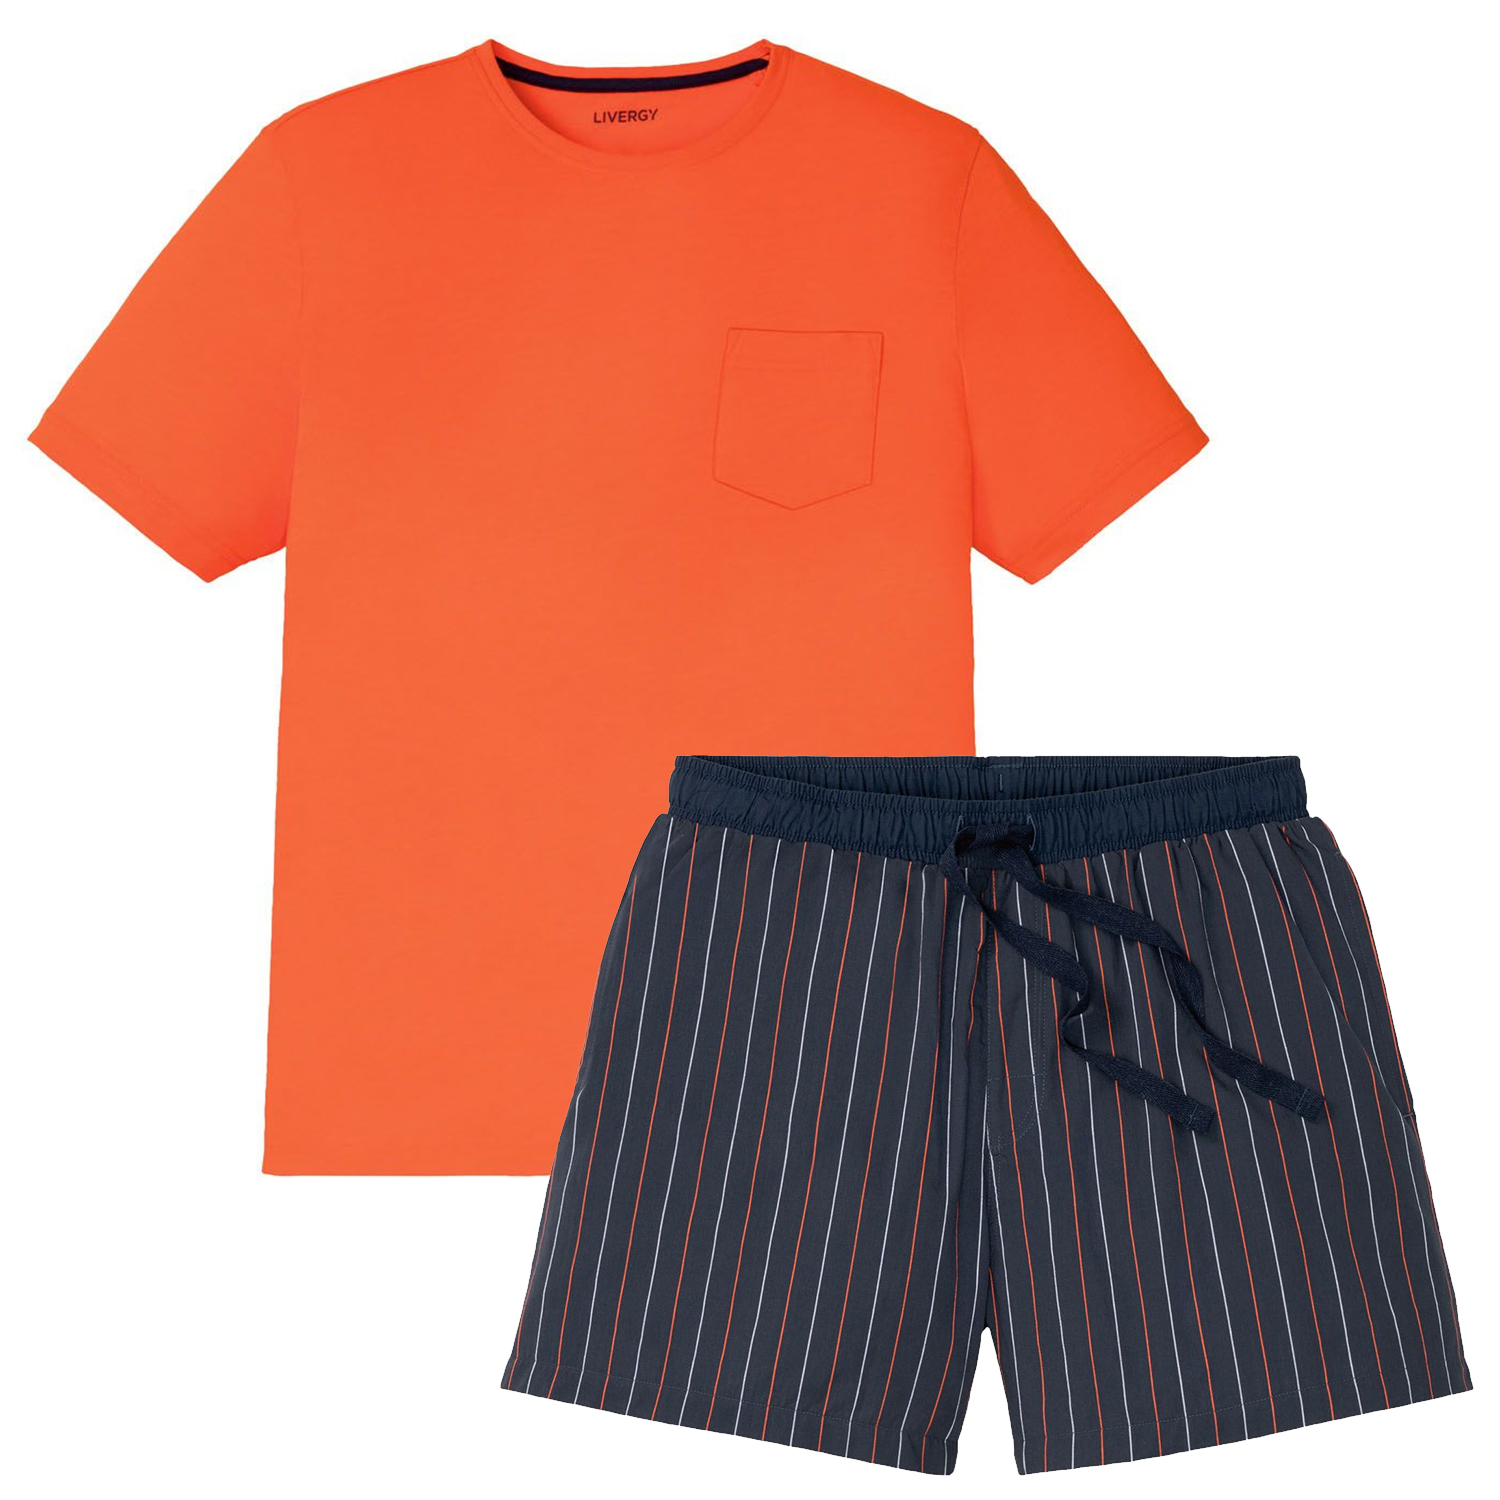 ست تی شرت و شلوارک مردانه لیورجی مدل دریم کد Lux2022 رنگ نارنجی